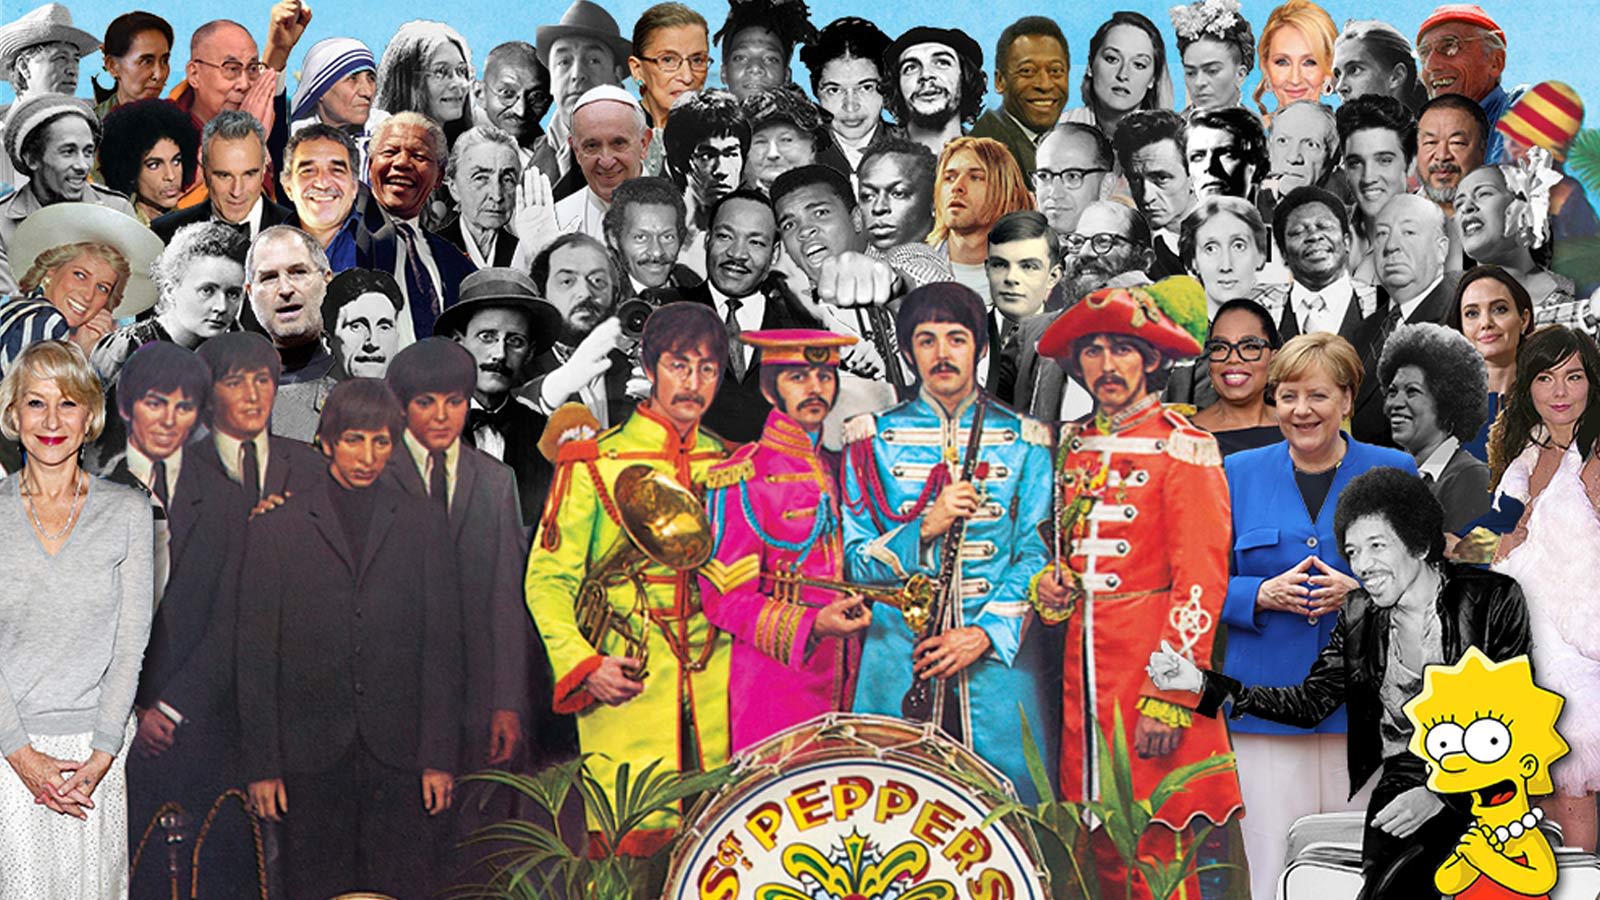 Beatles sgt pepper lonely. Клуб одиноких сердец сержанта Пеппера. The Beatles Sgt. Pepper's Lonely Hearts Club Band 1967. Битлз Sgt Pepper s Lonely Hearts Club Band. Сержант Пеппер (Sgt Pepper`s.